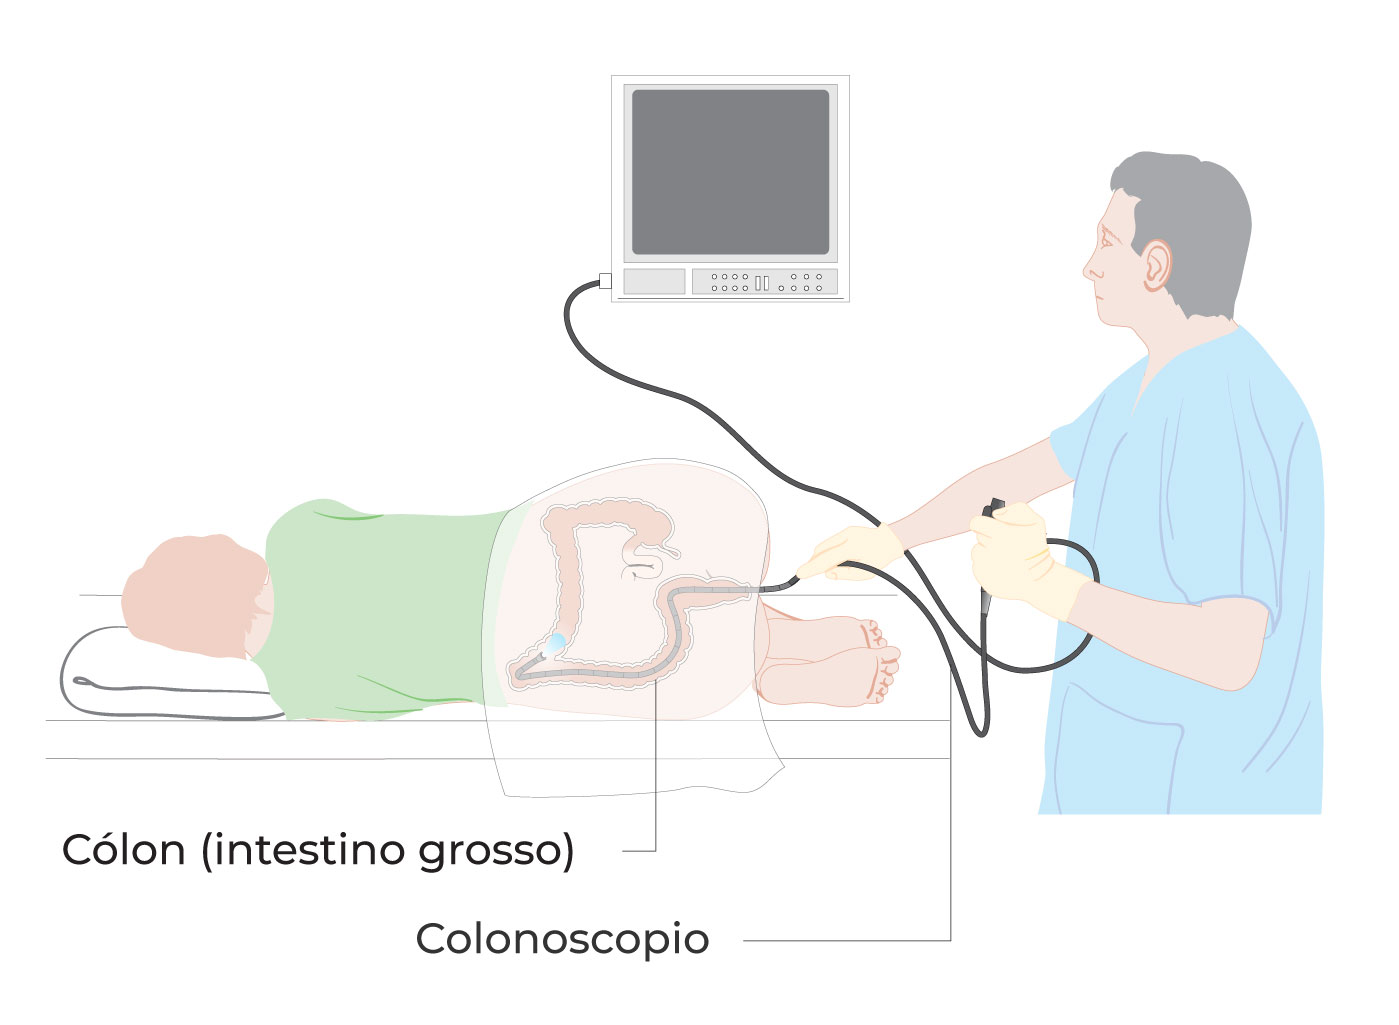 Diagrama que mostra a realização de uma colonoscopia